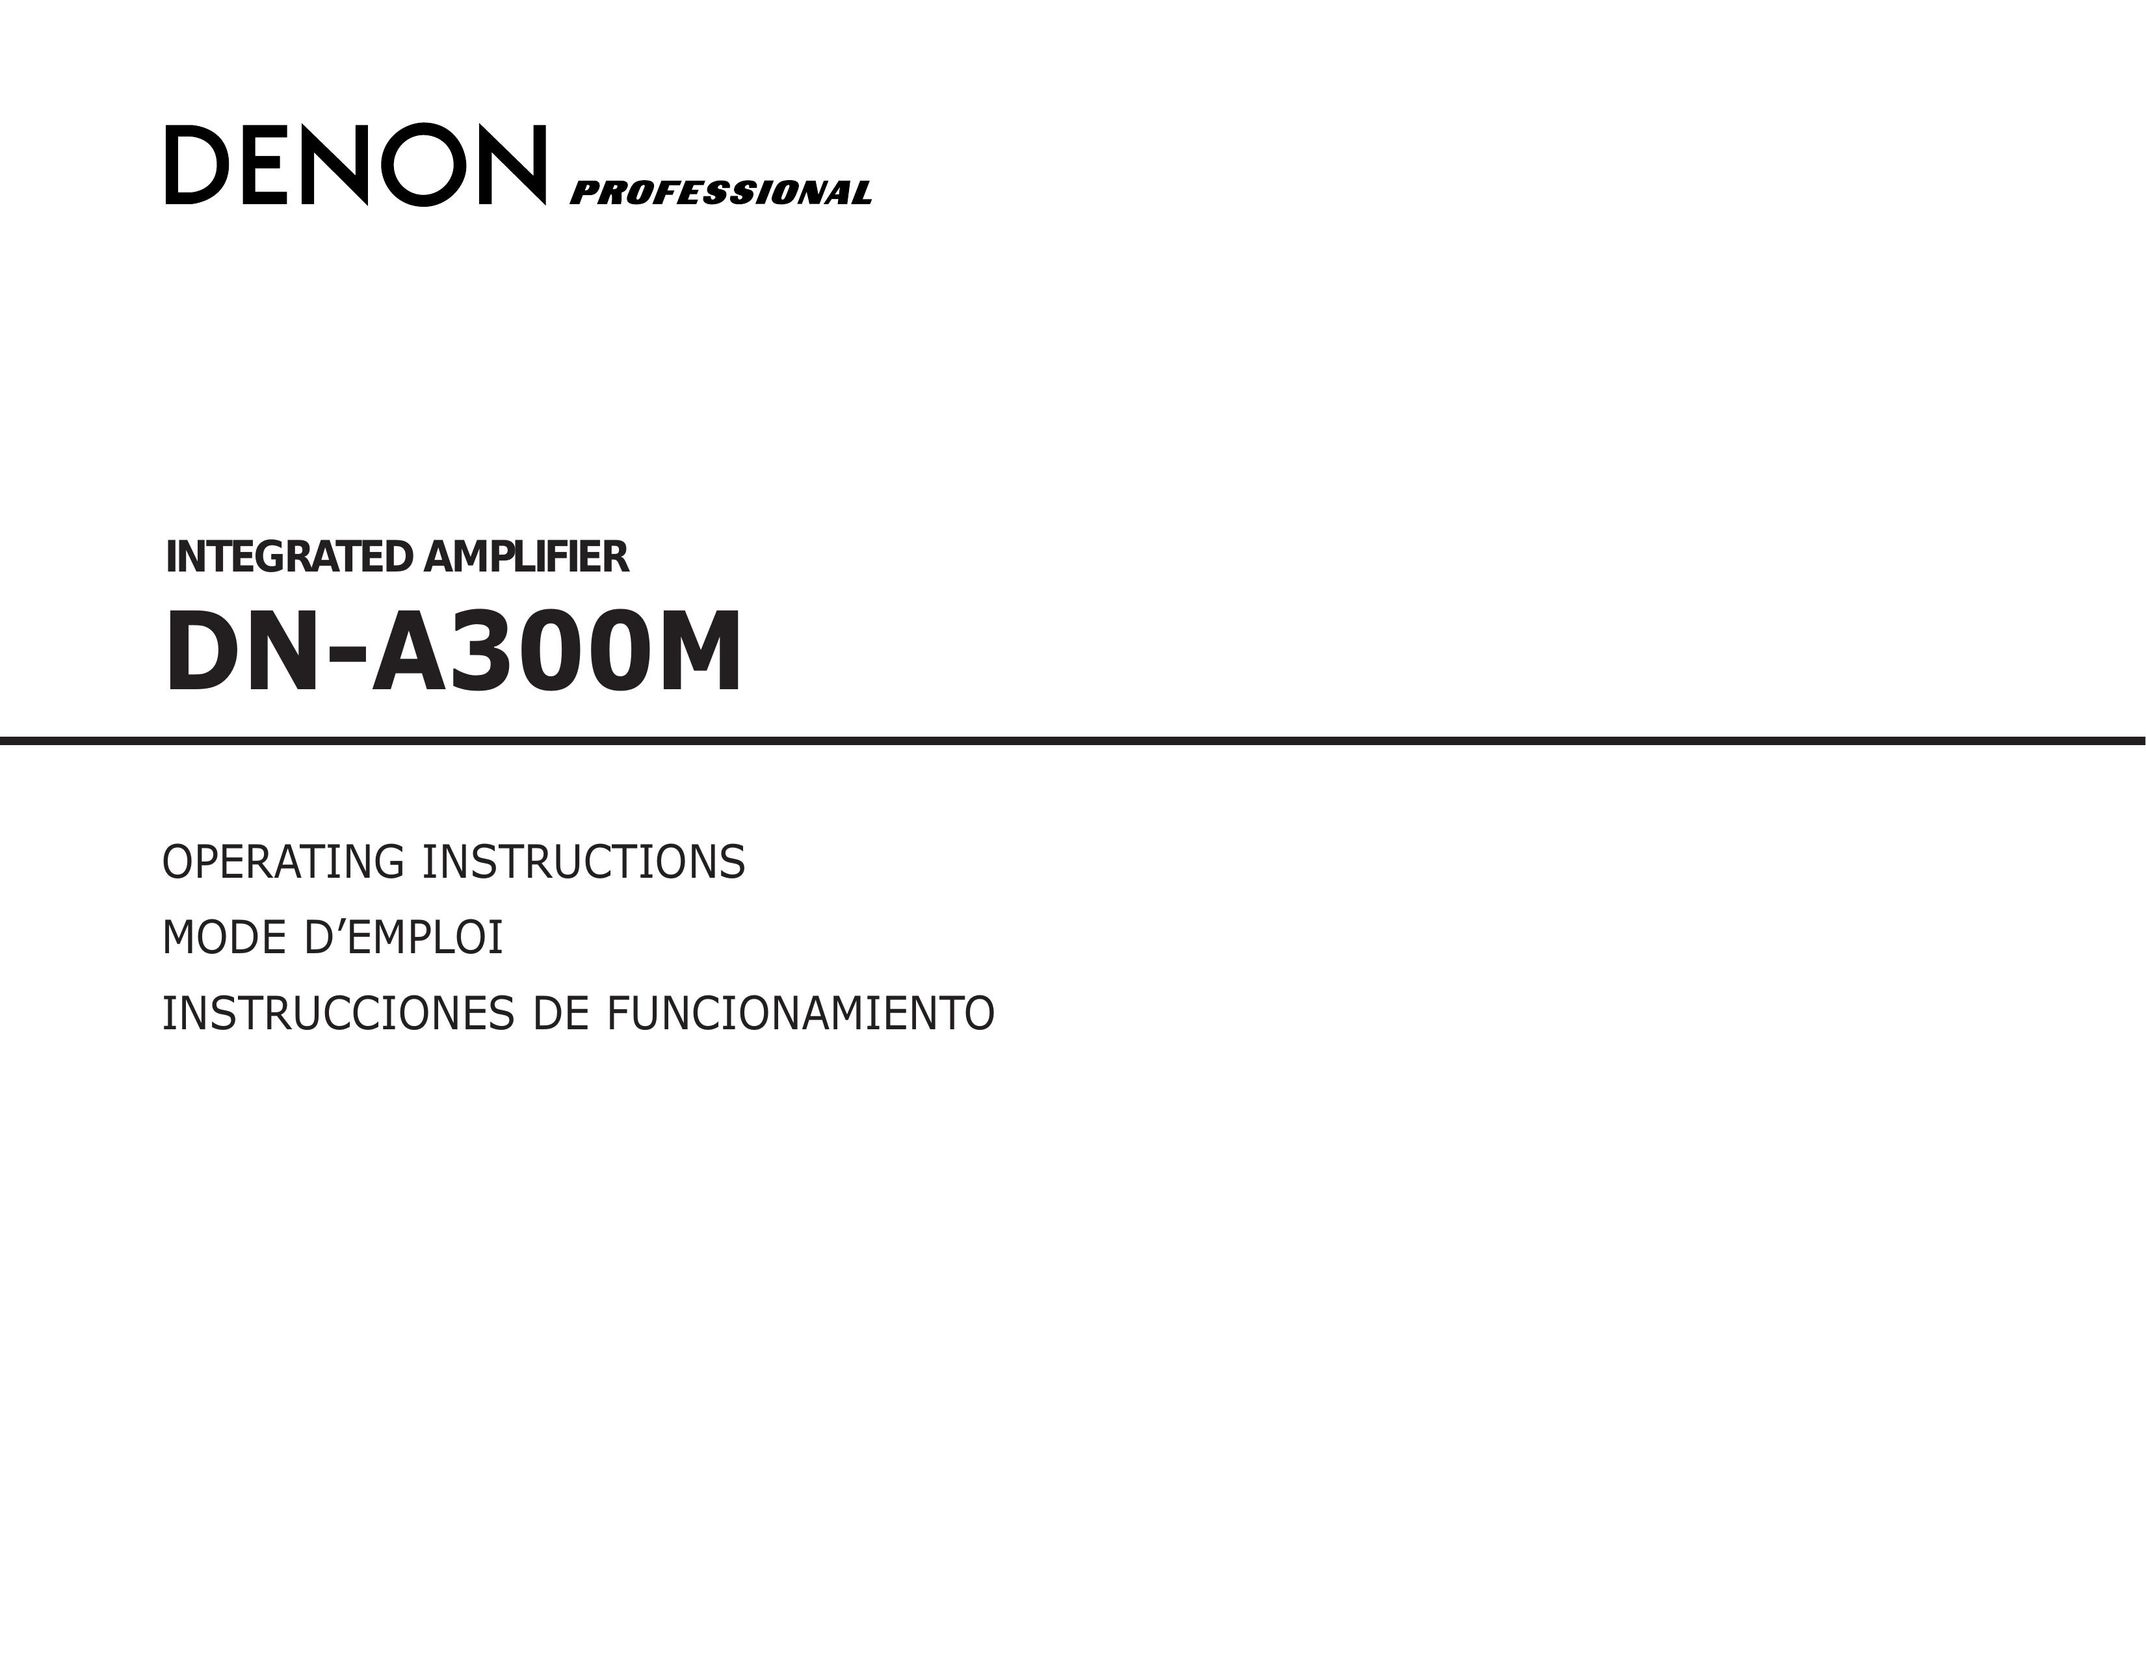 Denon DN-A300M Surge Protector User Manual